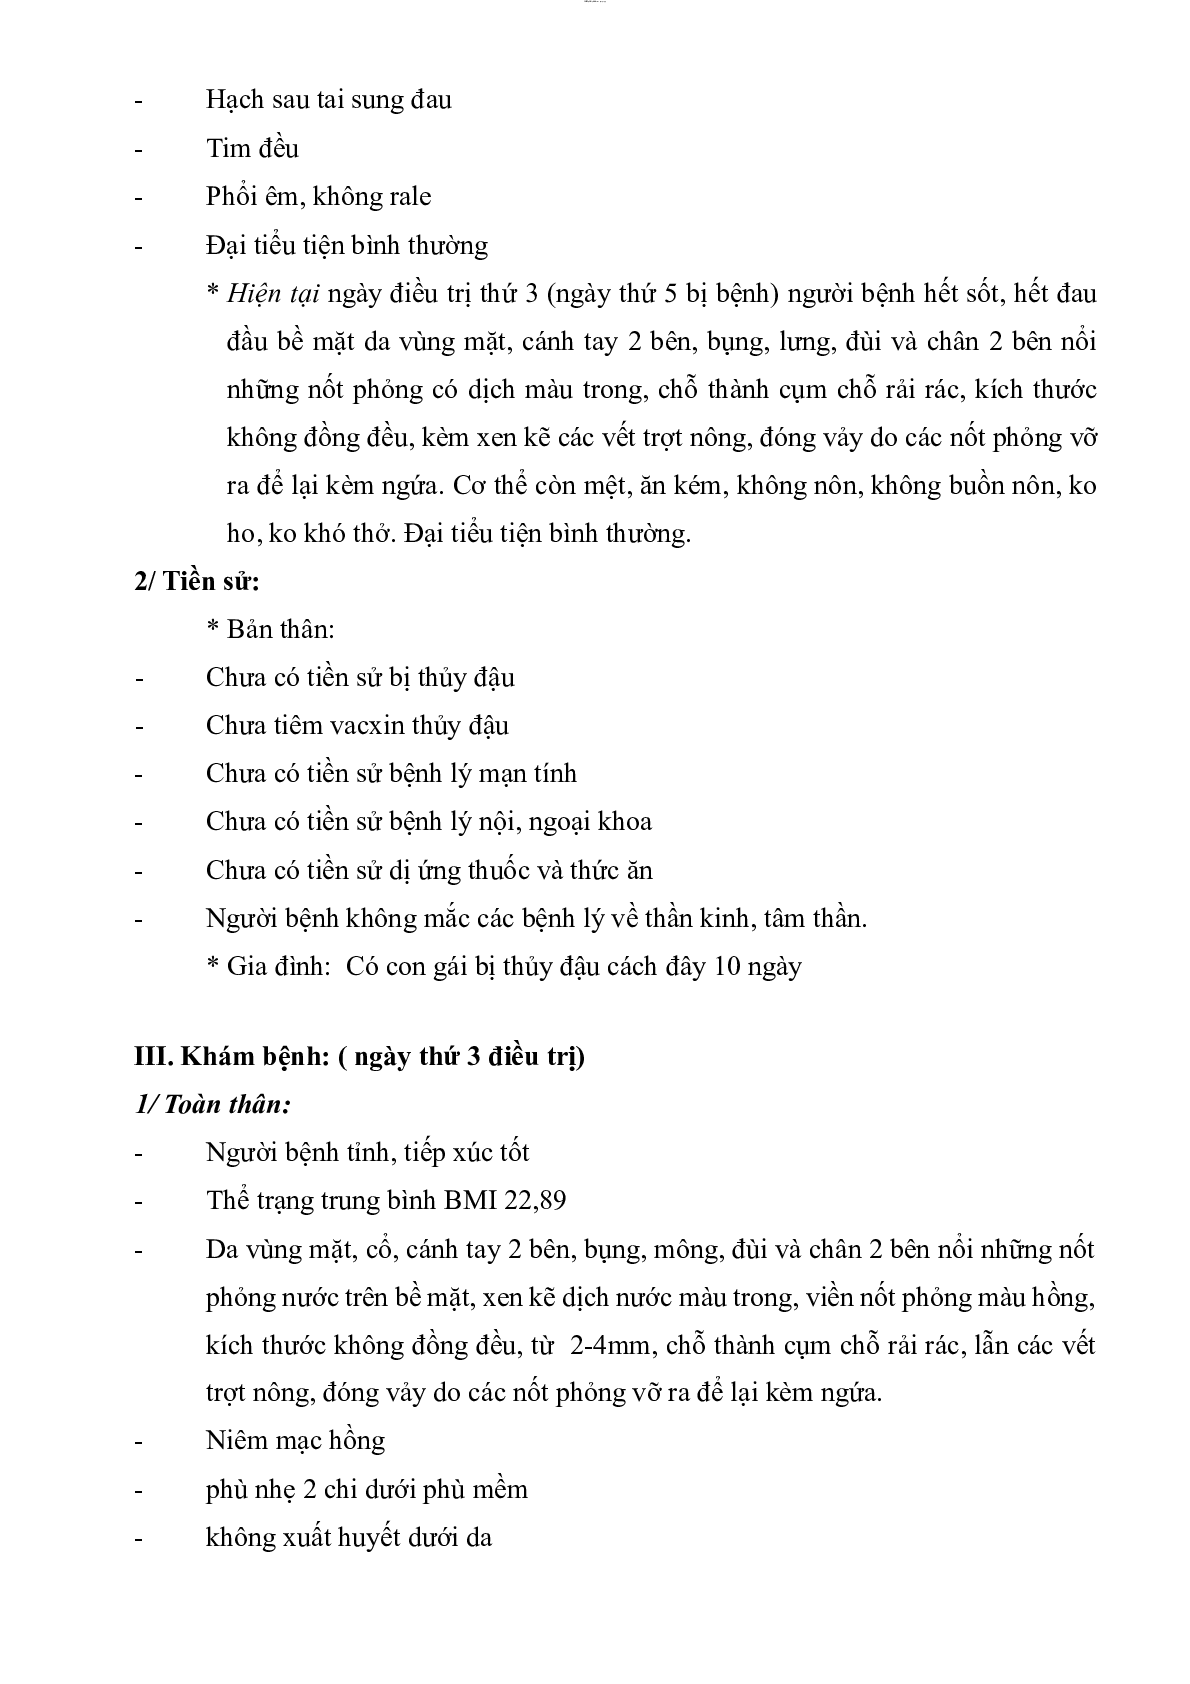 Bệnh án Thủy đậu | PDF (trang 2)